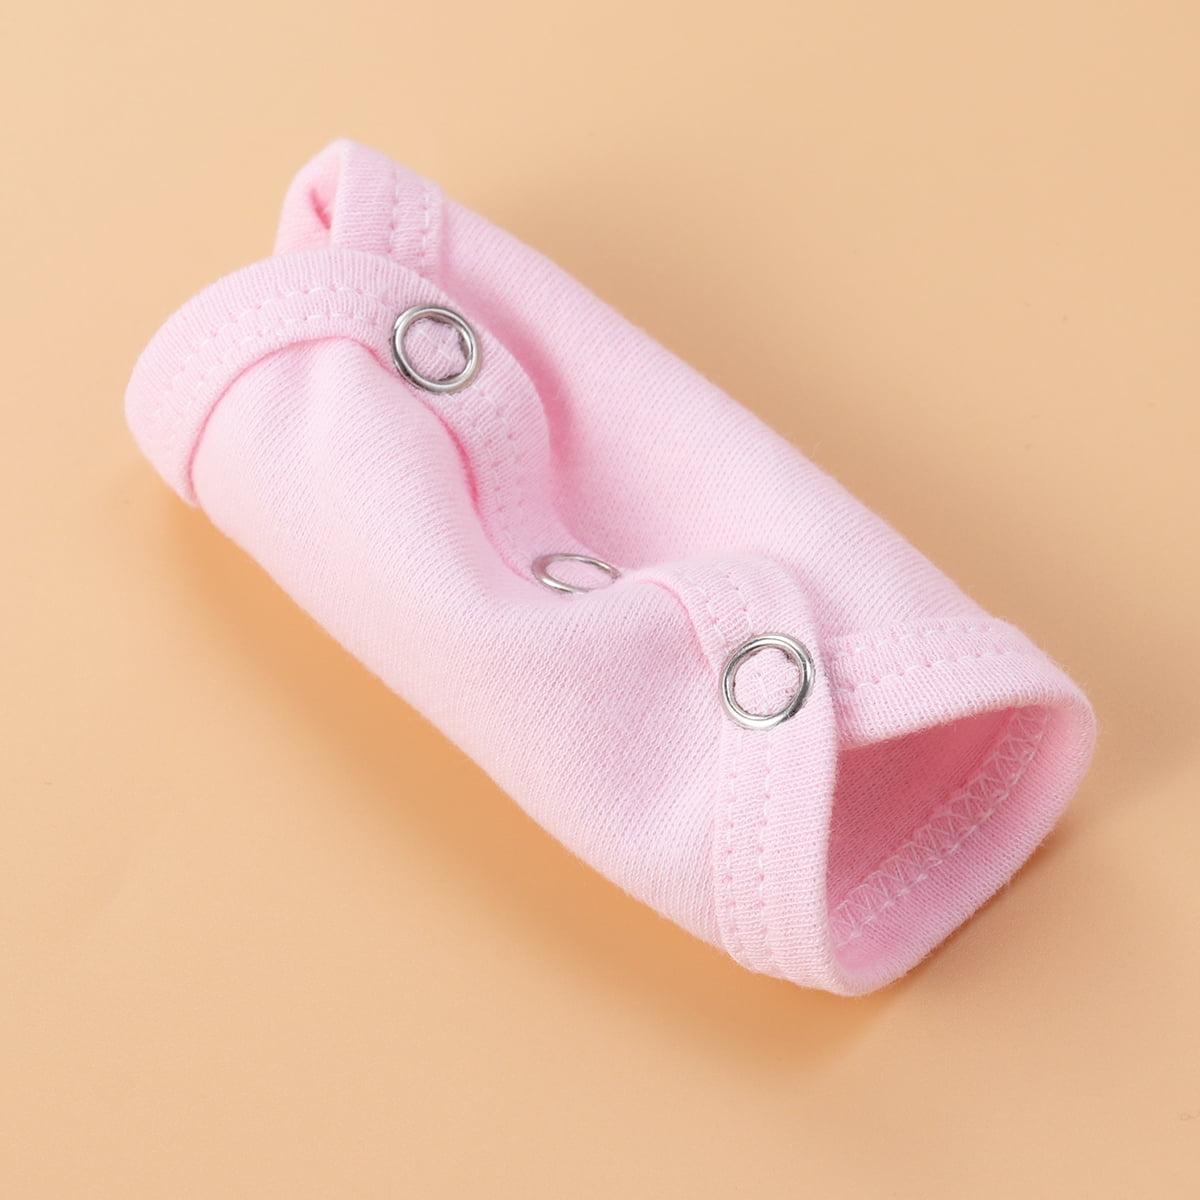 Size kids /Bodysuit Extender Film Adjustable Length Cotton - Pink